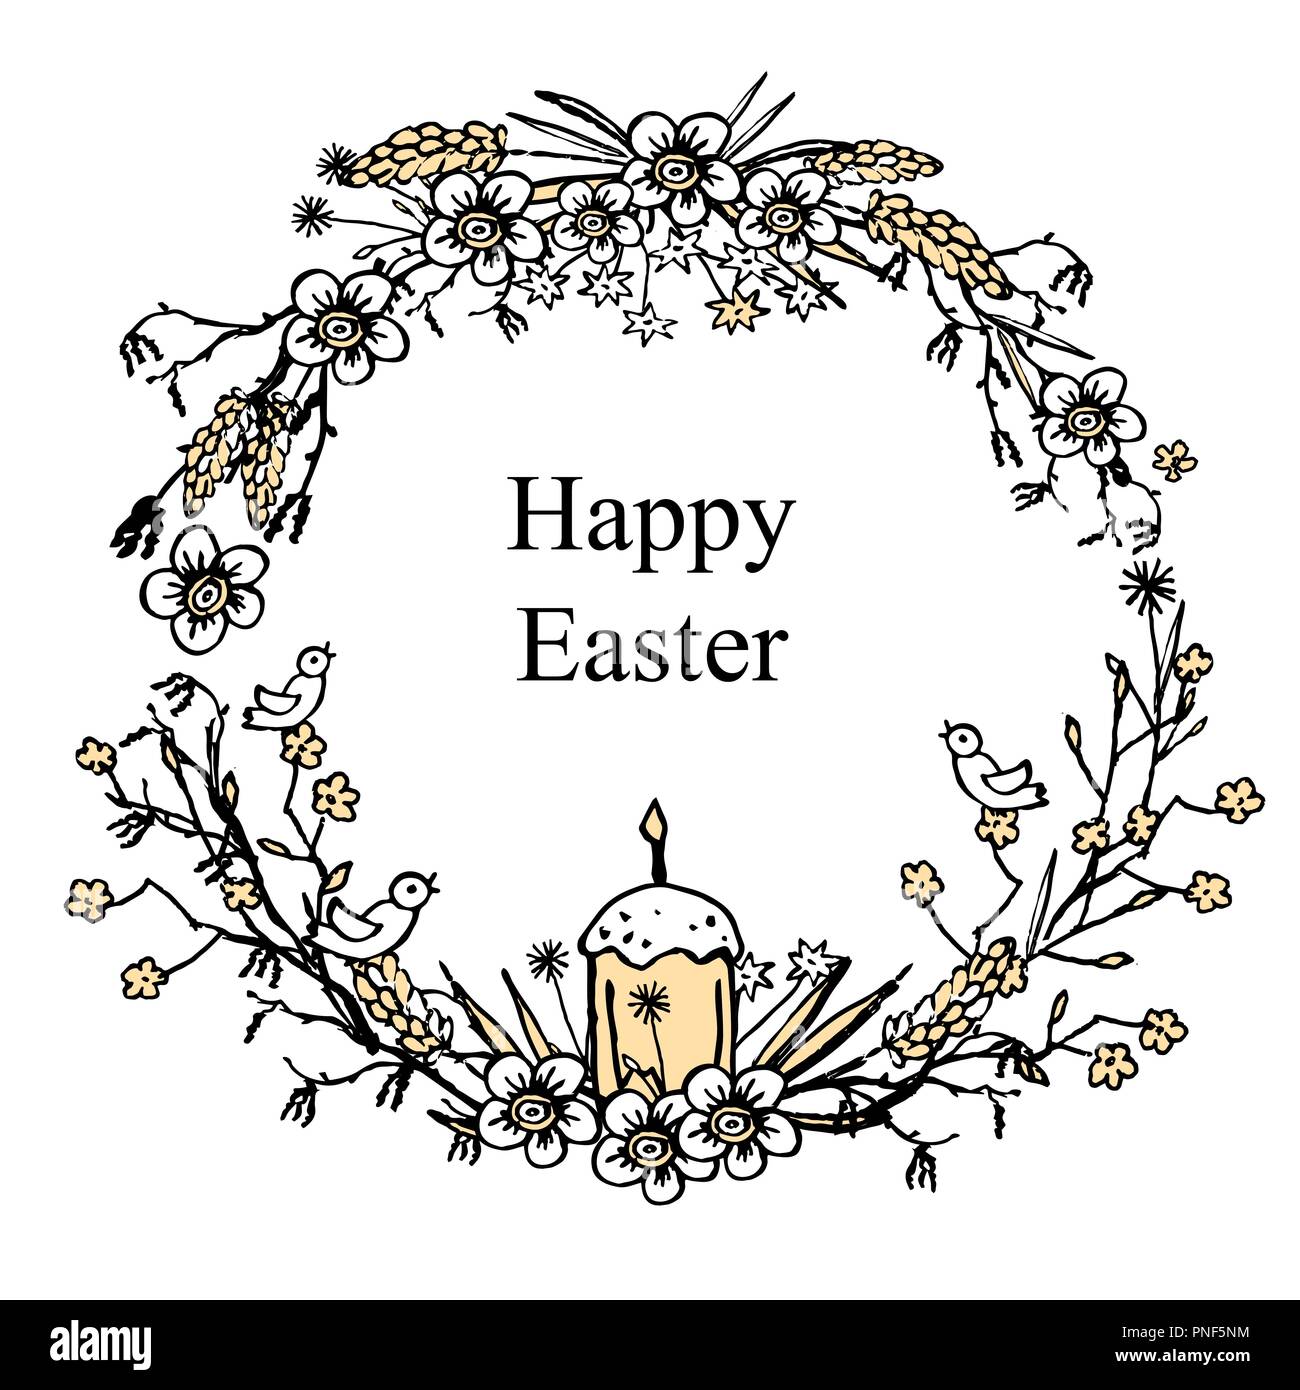 Grußkarte zu Ostern mit Blumen Kranz mit Ei, Ostern Kuchen, flolwers und Brunches. Vintage Hintergrund dargestellt. Vector Illustration. Stock Vektor